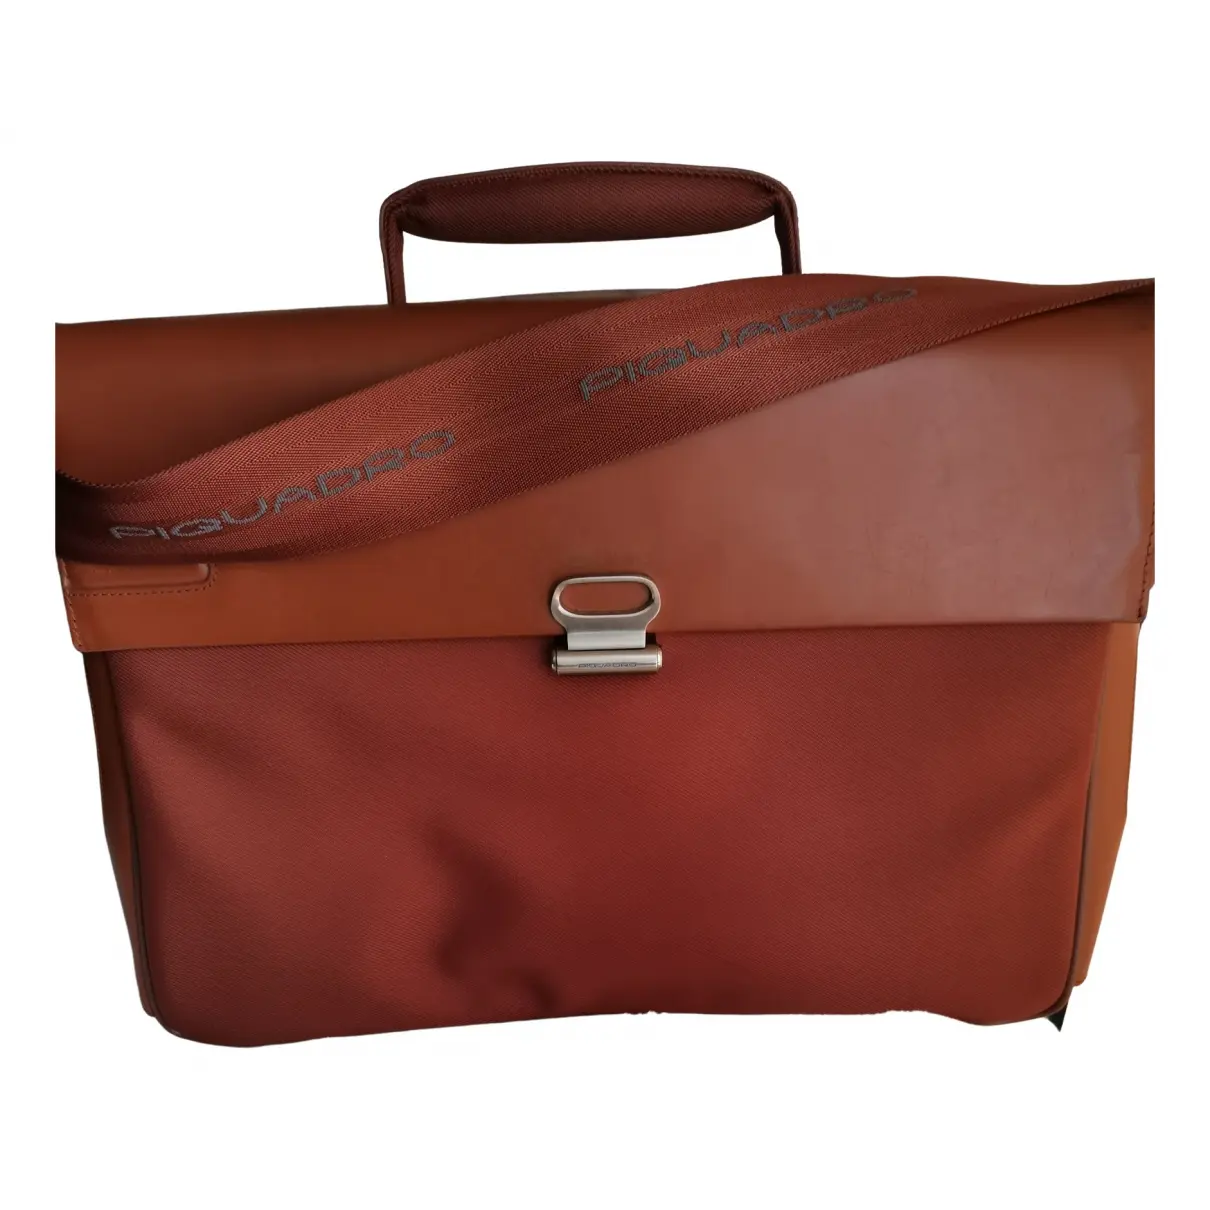 Leather satchel Piquadro